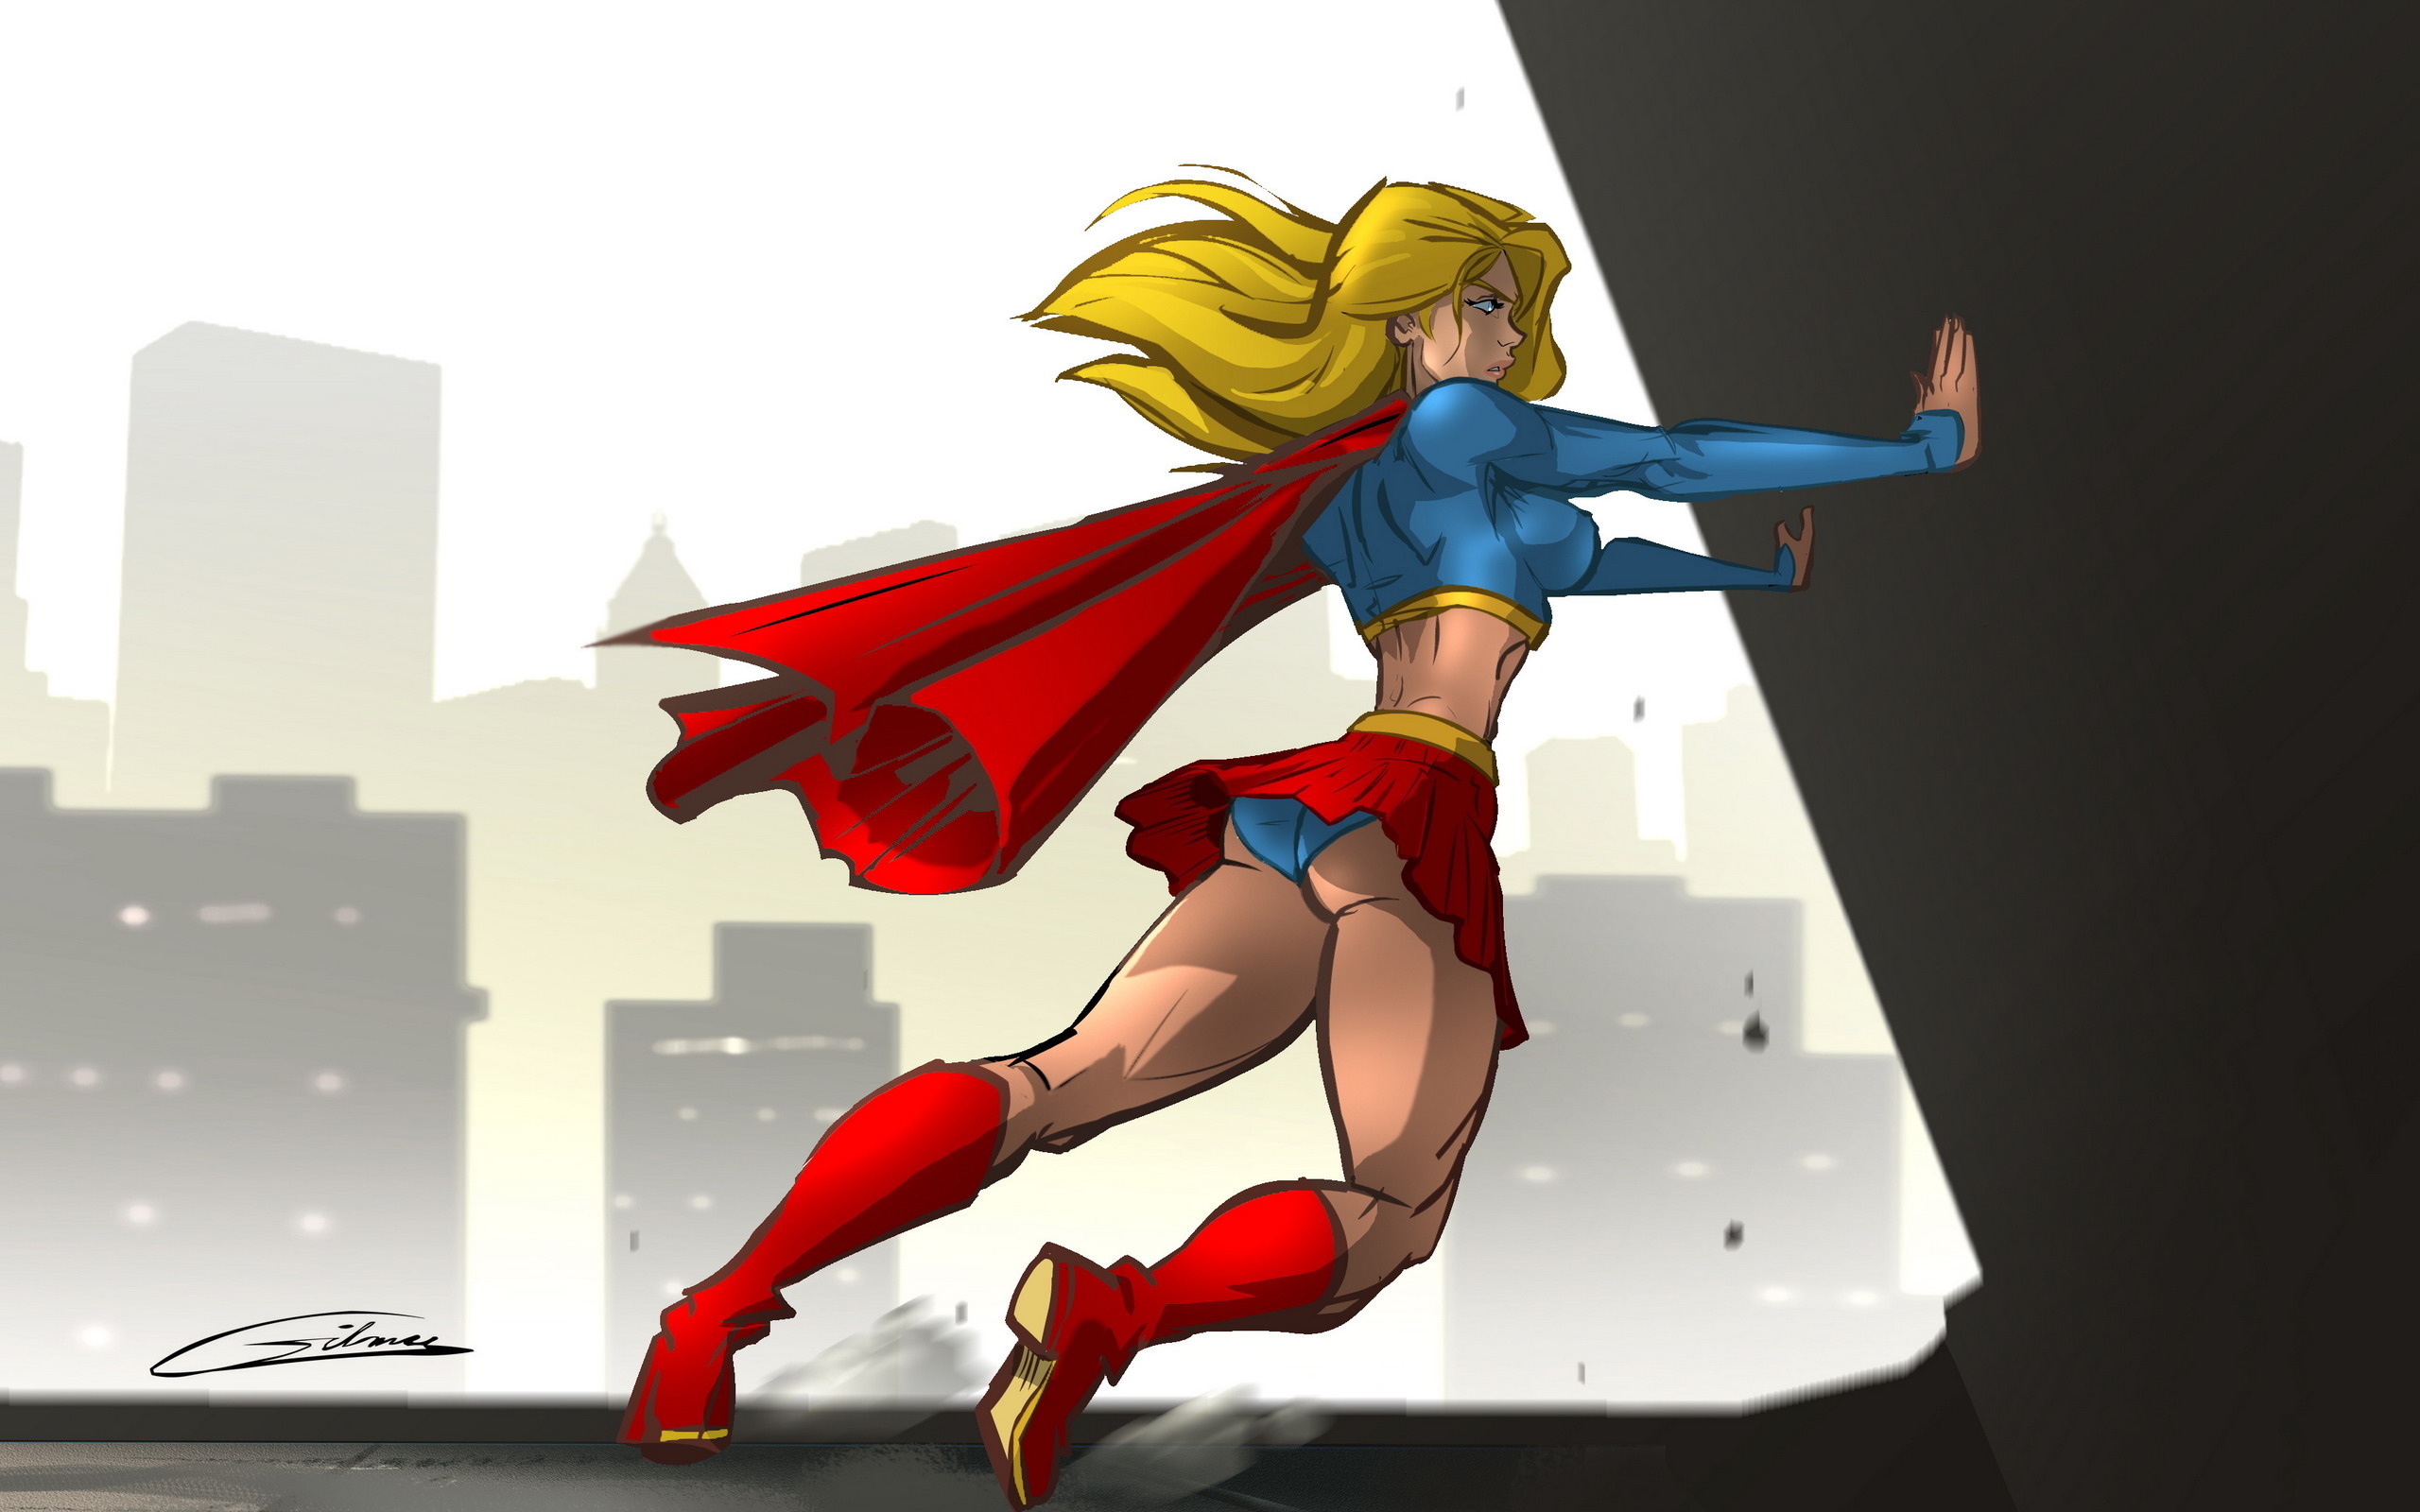 Скачать обои бесплатно Комиксы, Супермен, Супергёрл картинка на рабочий стол ПК